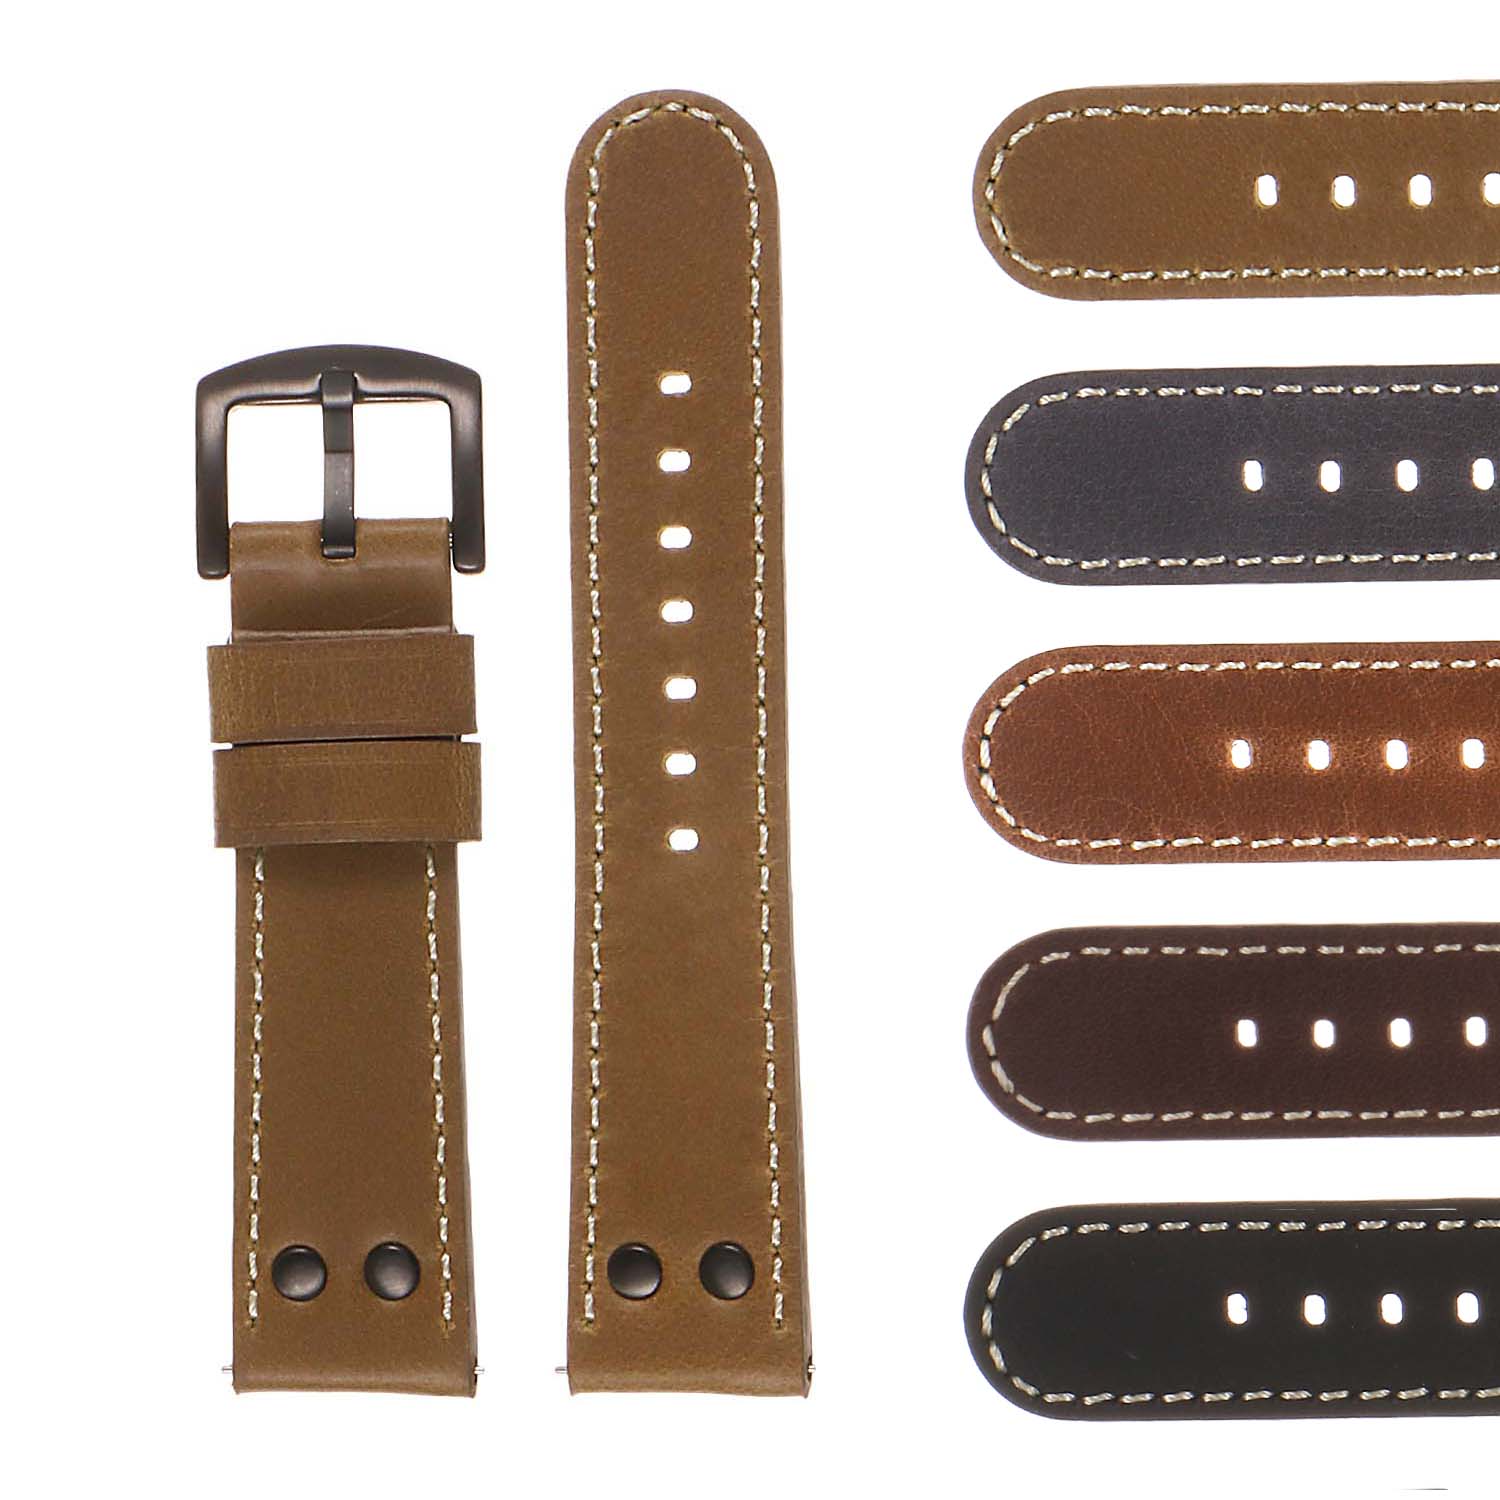 Strapsco DASSARI Vintage Leather Pilot Watch Band for Samsung Gear S3 Frontier